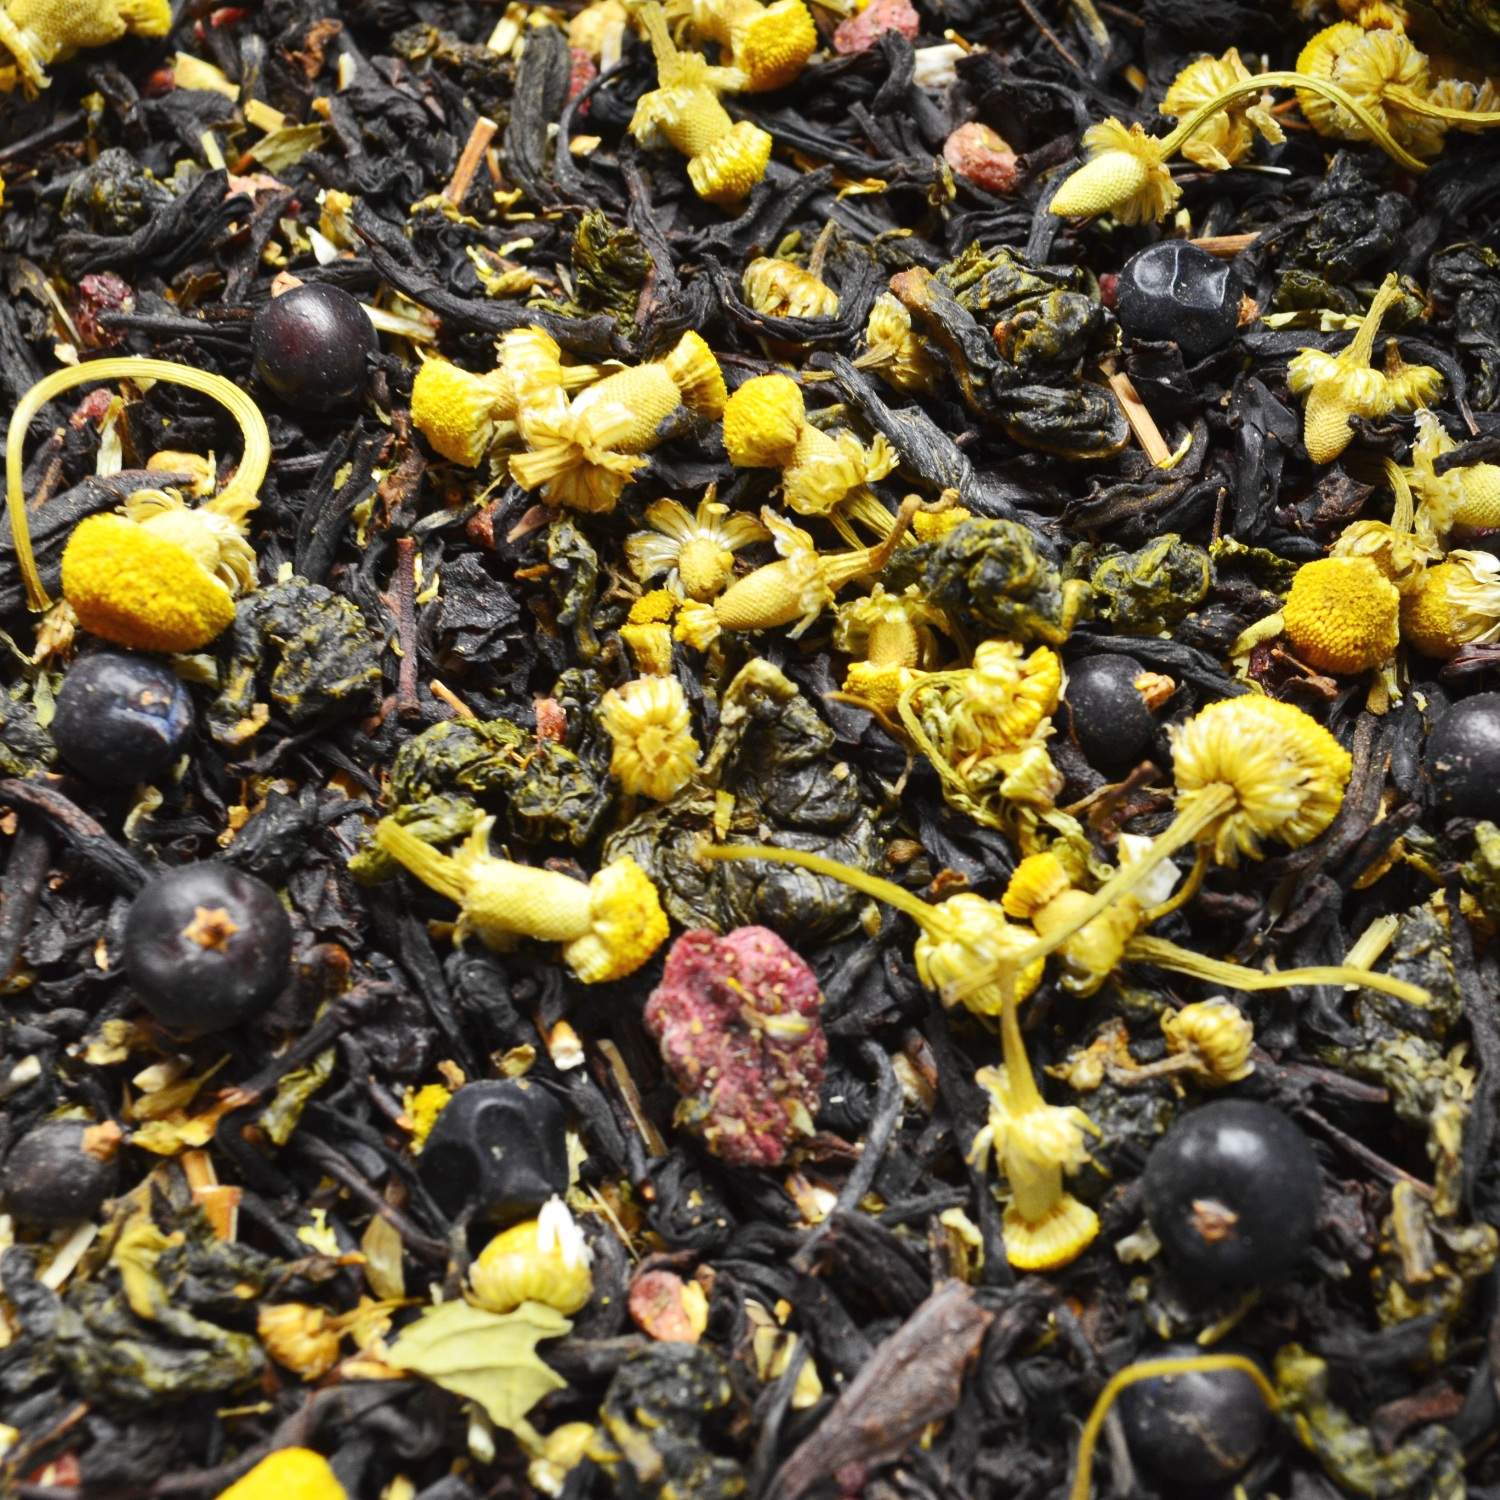 Чай "Здоровое пищеварение" смесь черного и зеленого чаёв с травами и ягодами